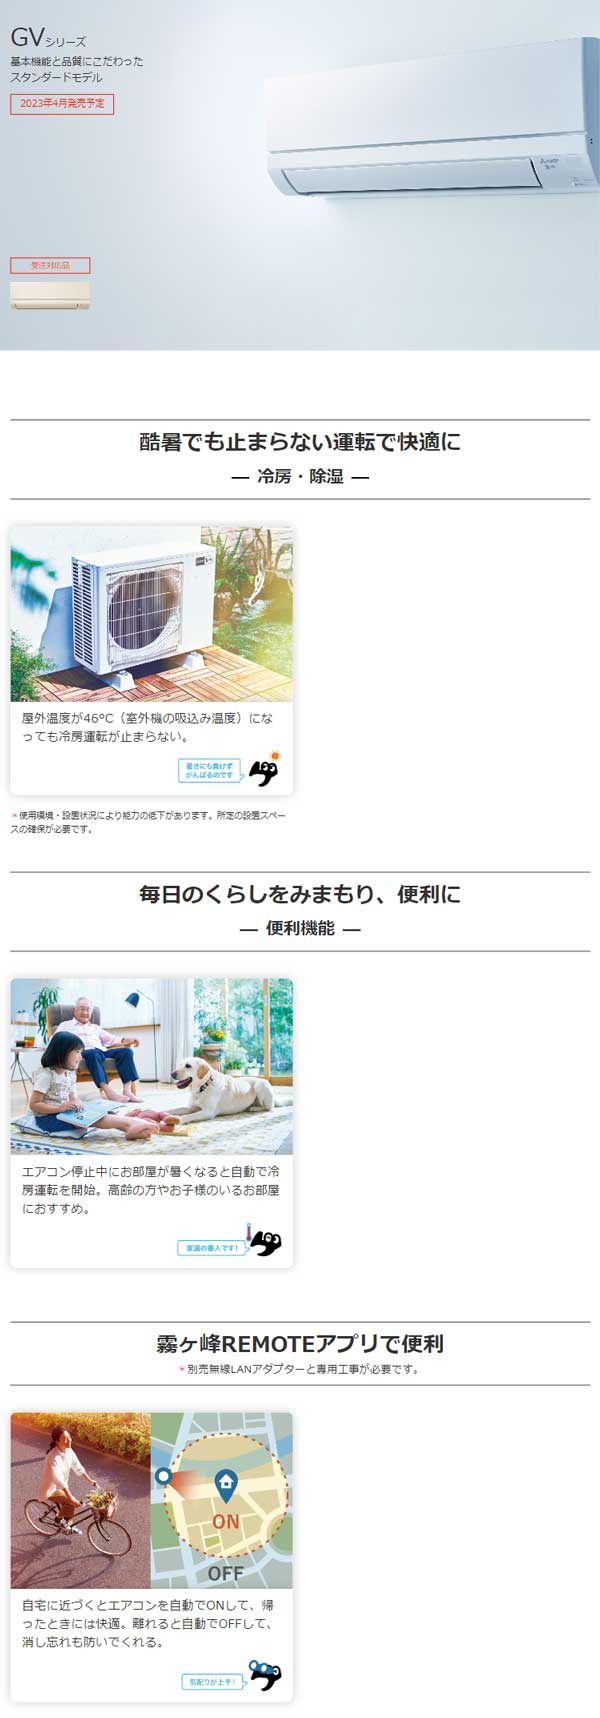 ACE.NET / MSZ-GV2223-W 三菱電機 ルームエアコン [ピュアホワイト